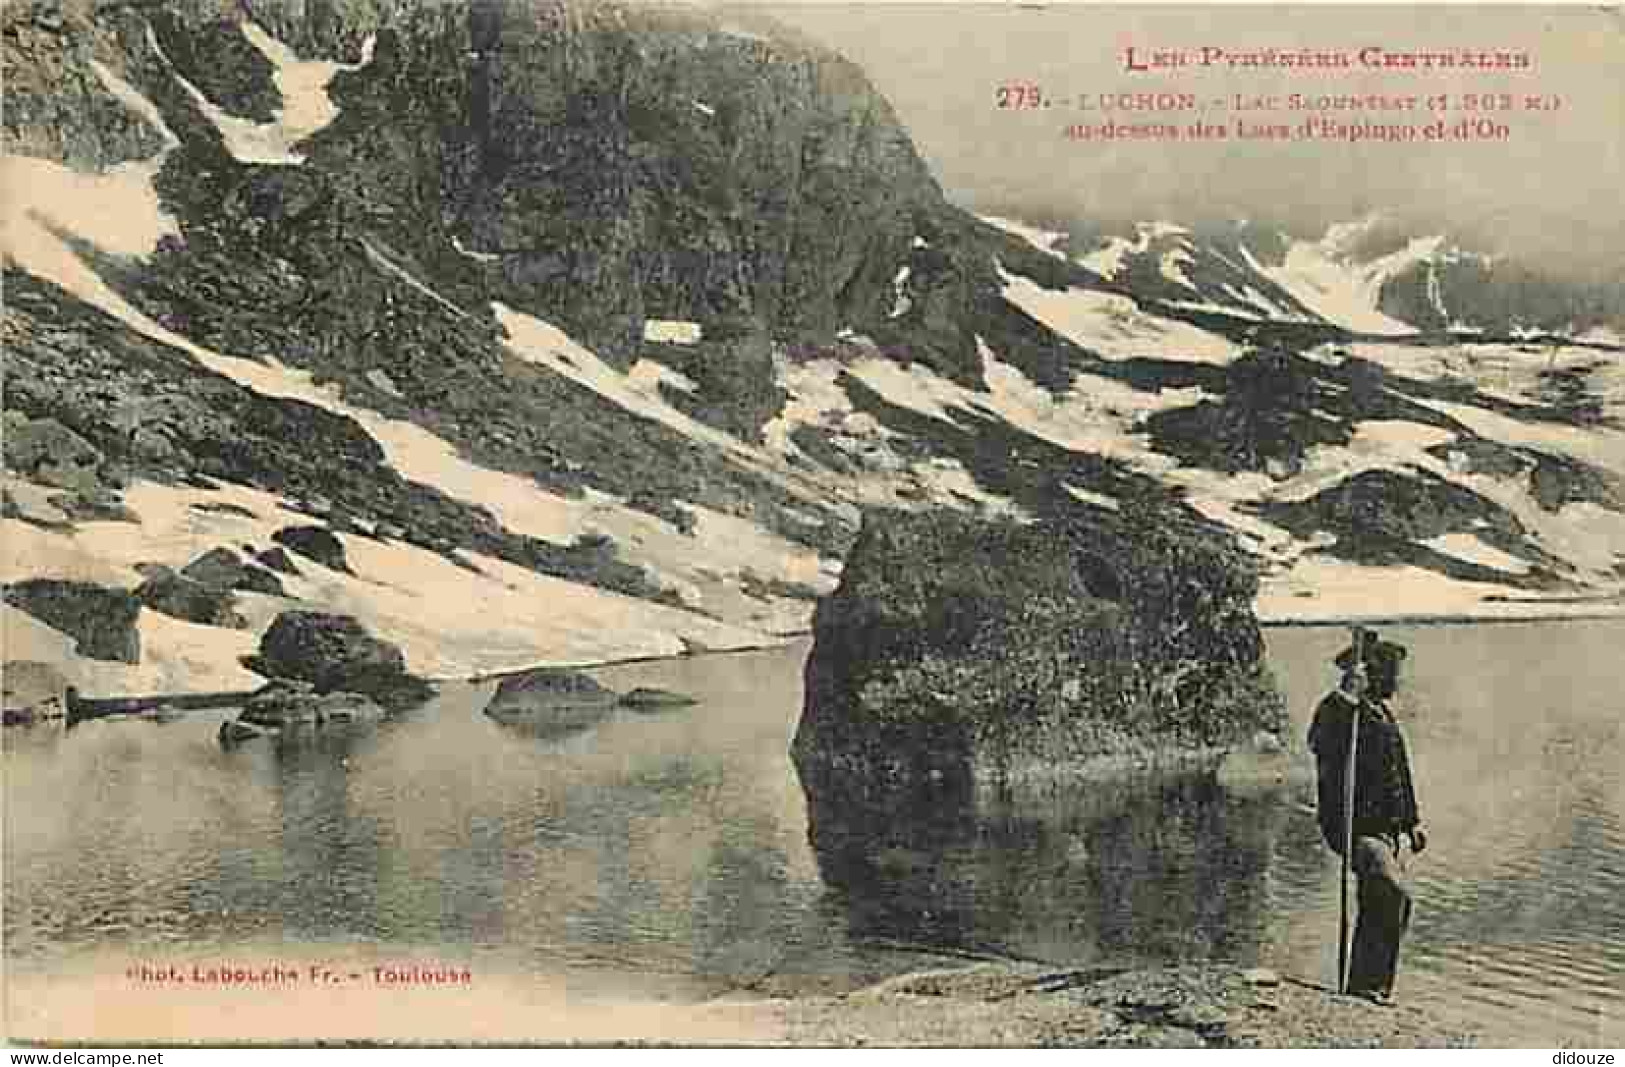 31 - Luchon - Lac Saountsat Au Dessus Des Lacs D'Espingo Et D'Oo - Animée - Oblitération Ronde De 1928 - CPA - Voir Scan - Luchon